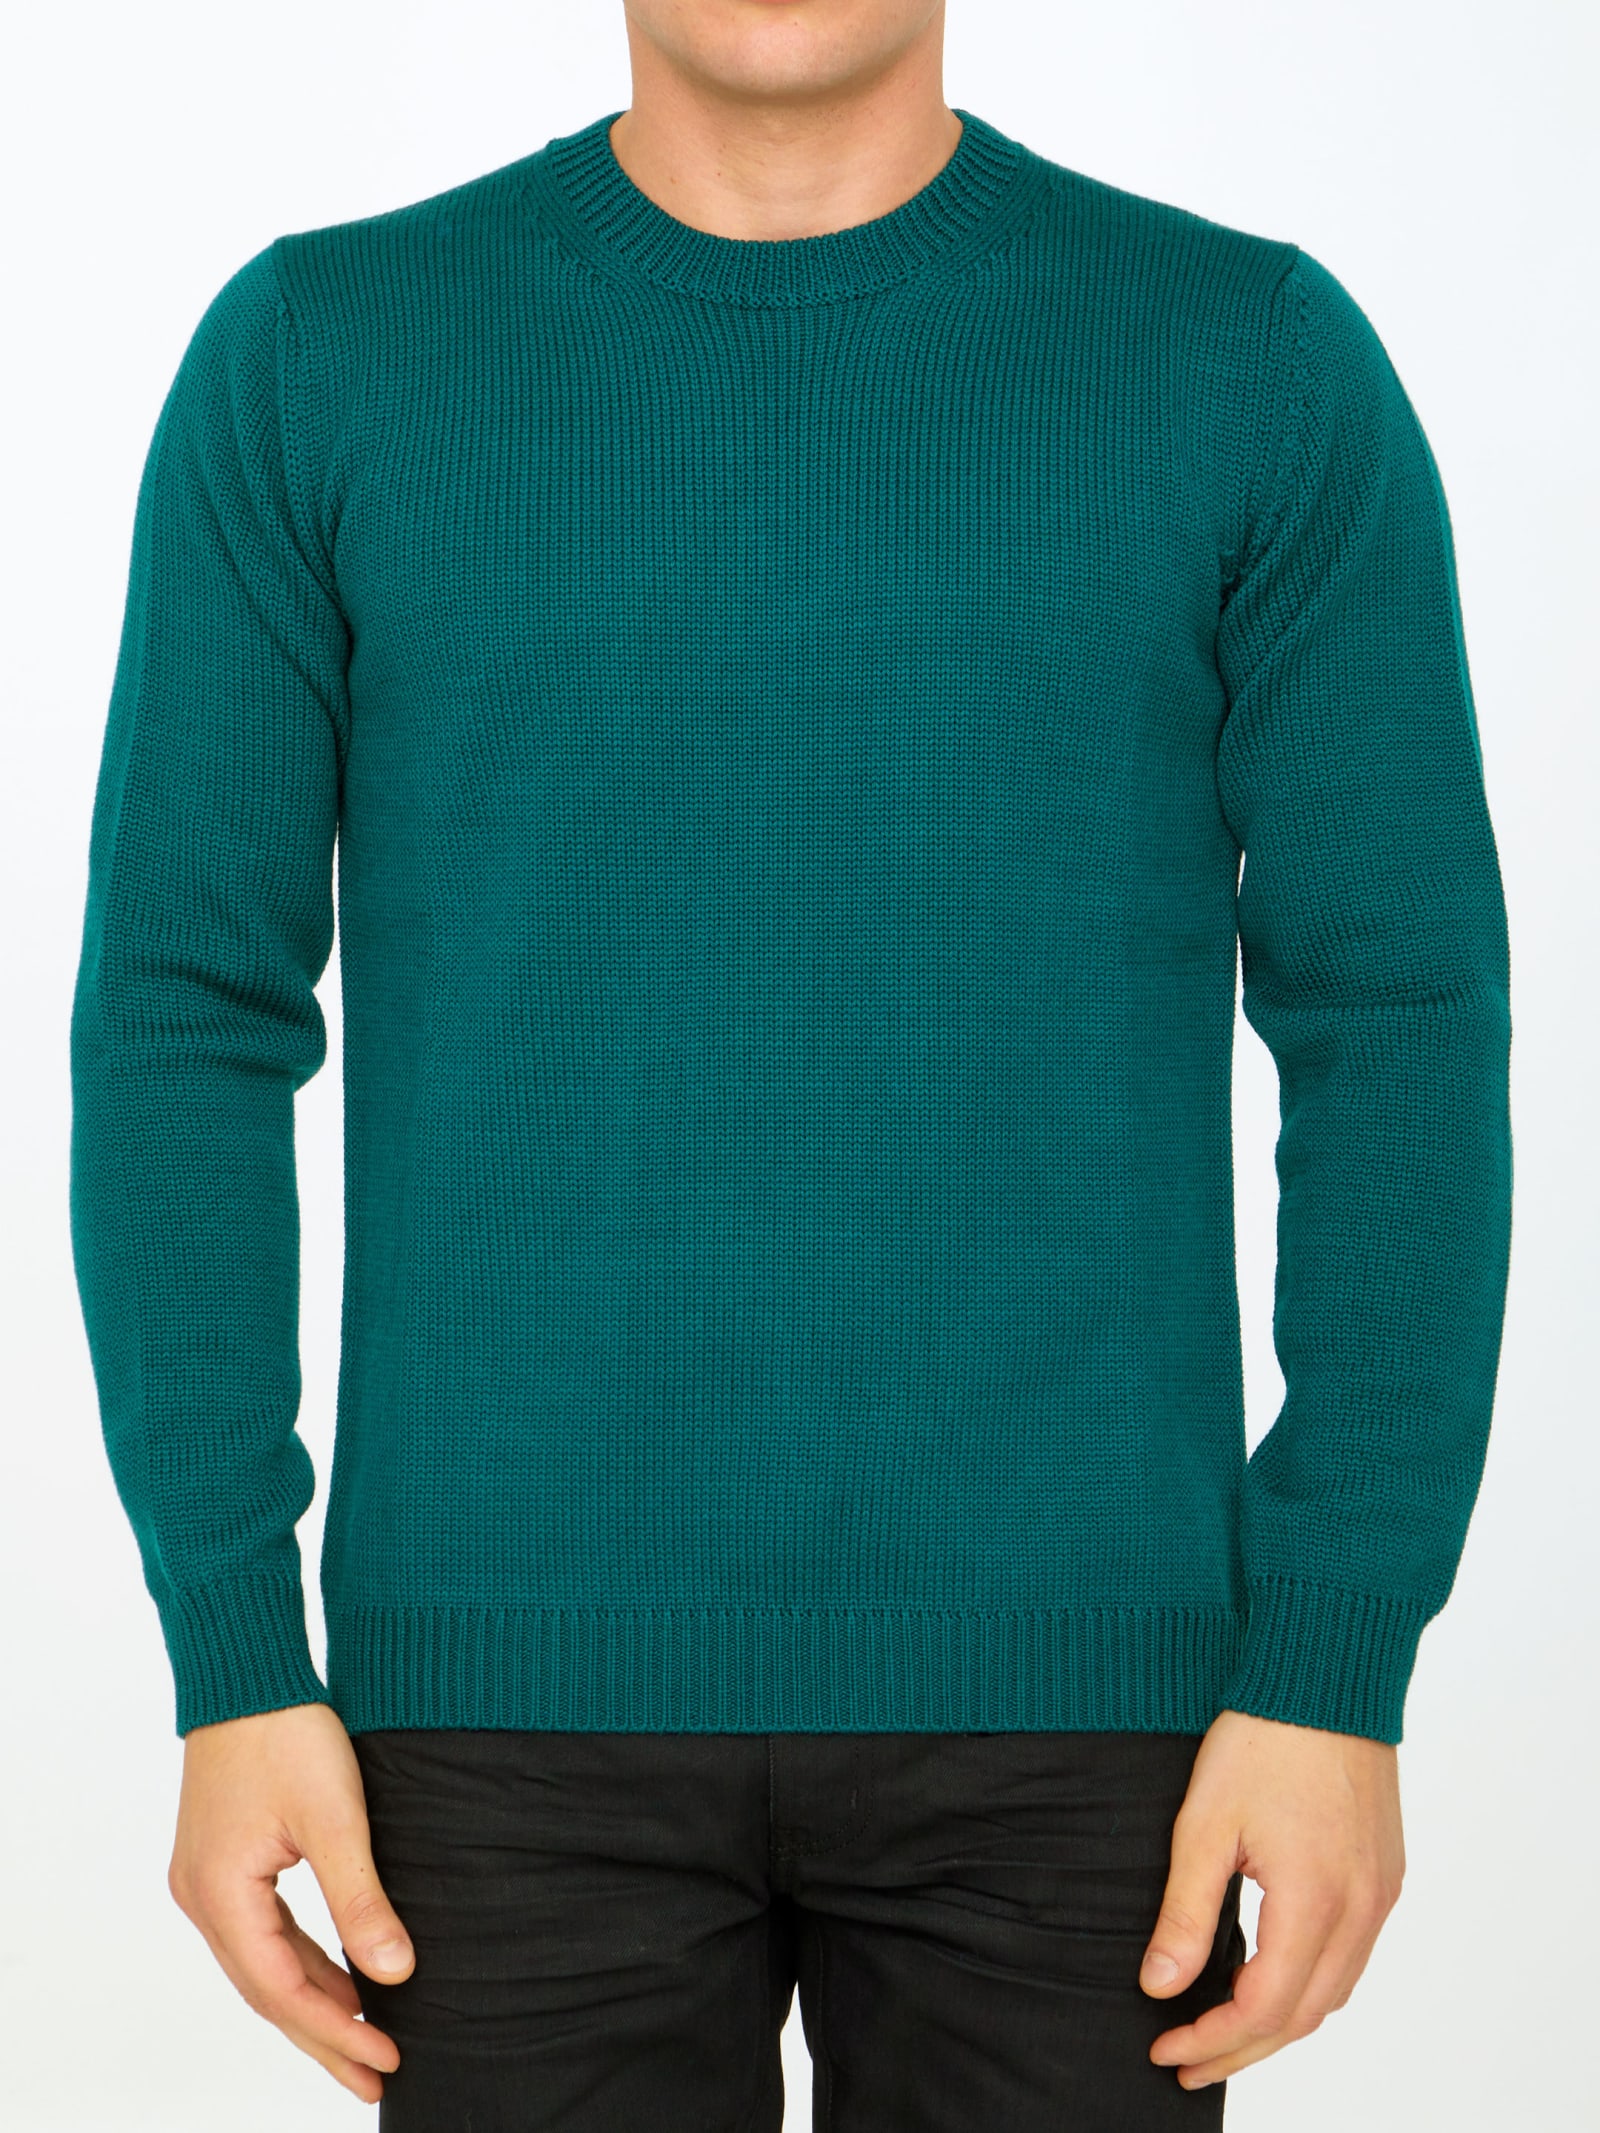 Roberto Collina Green Merino Wool Sweater